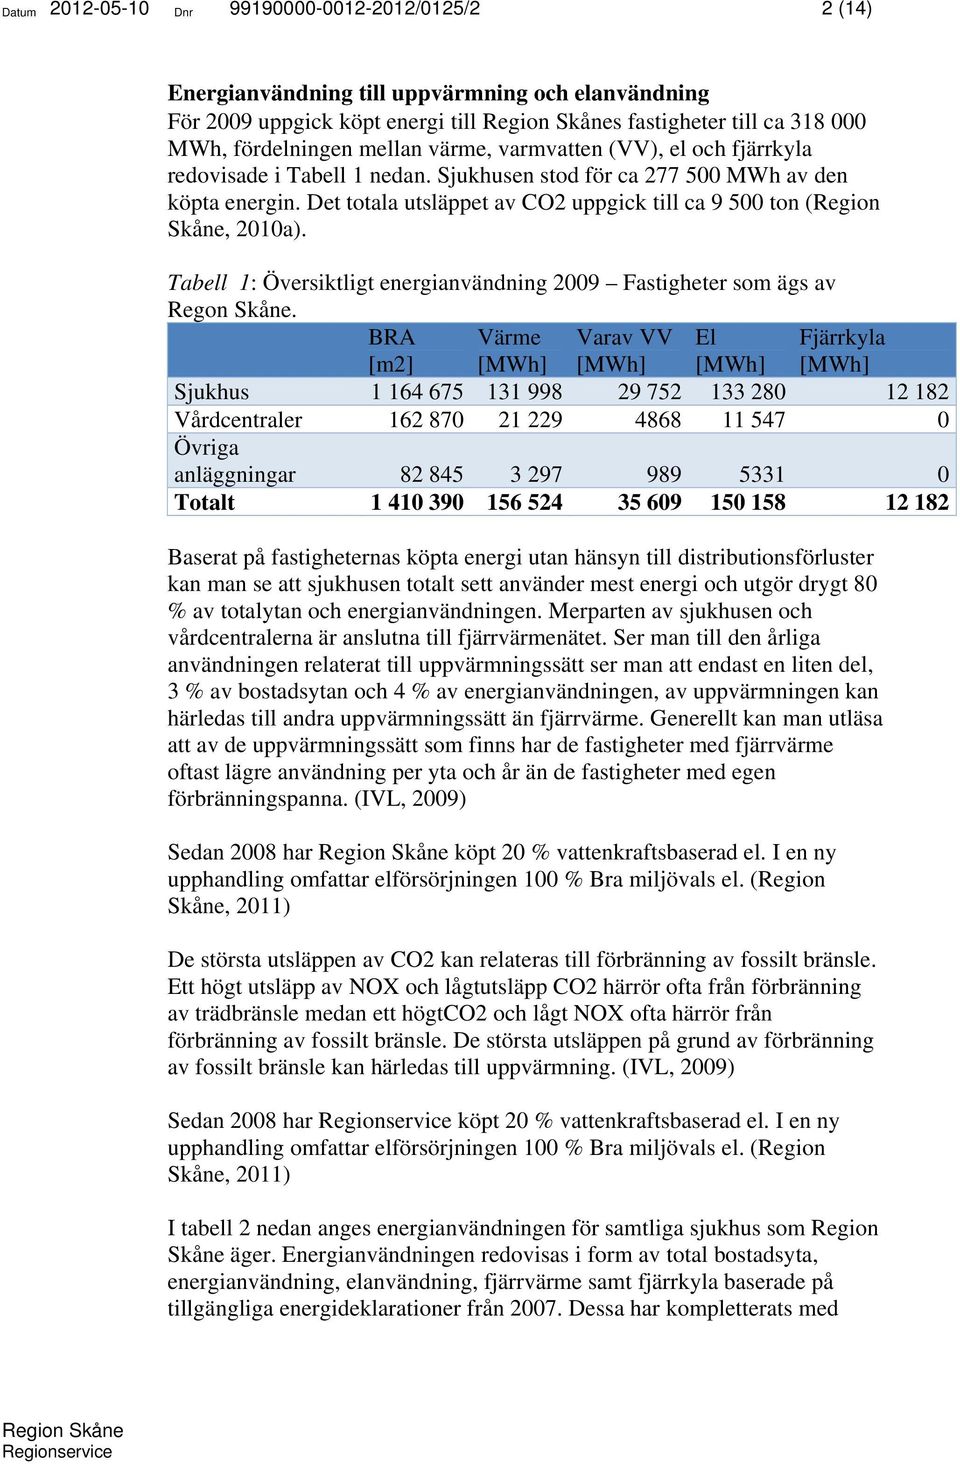 Det totala utsläppet av CO2 uppgick till ca 9 500 ton (Region Skåne, 2010a). Tabell 1: Översiktligt energianvändning 2009 Fastigheter som ägs av Regon Skåne.